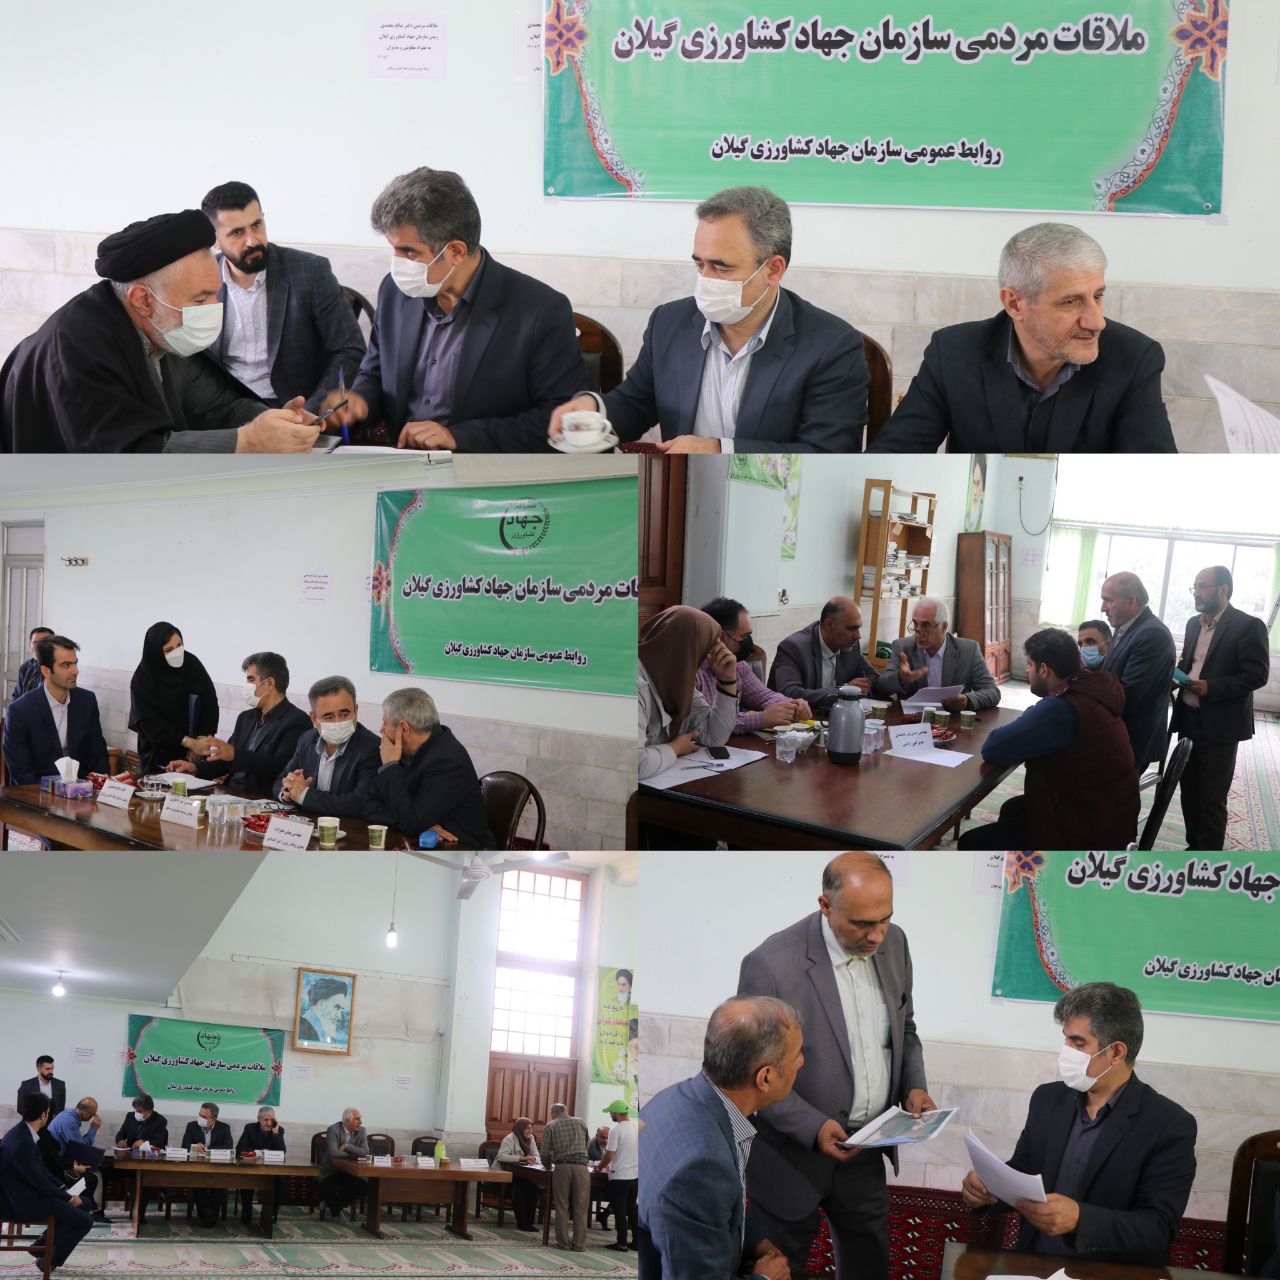 برنامه ملاقات عمومی با رئیس سازمان جهاد کشاورزی استان گیلان برگزار شد.